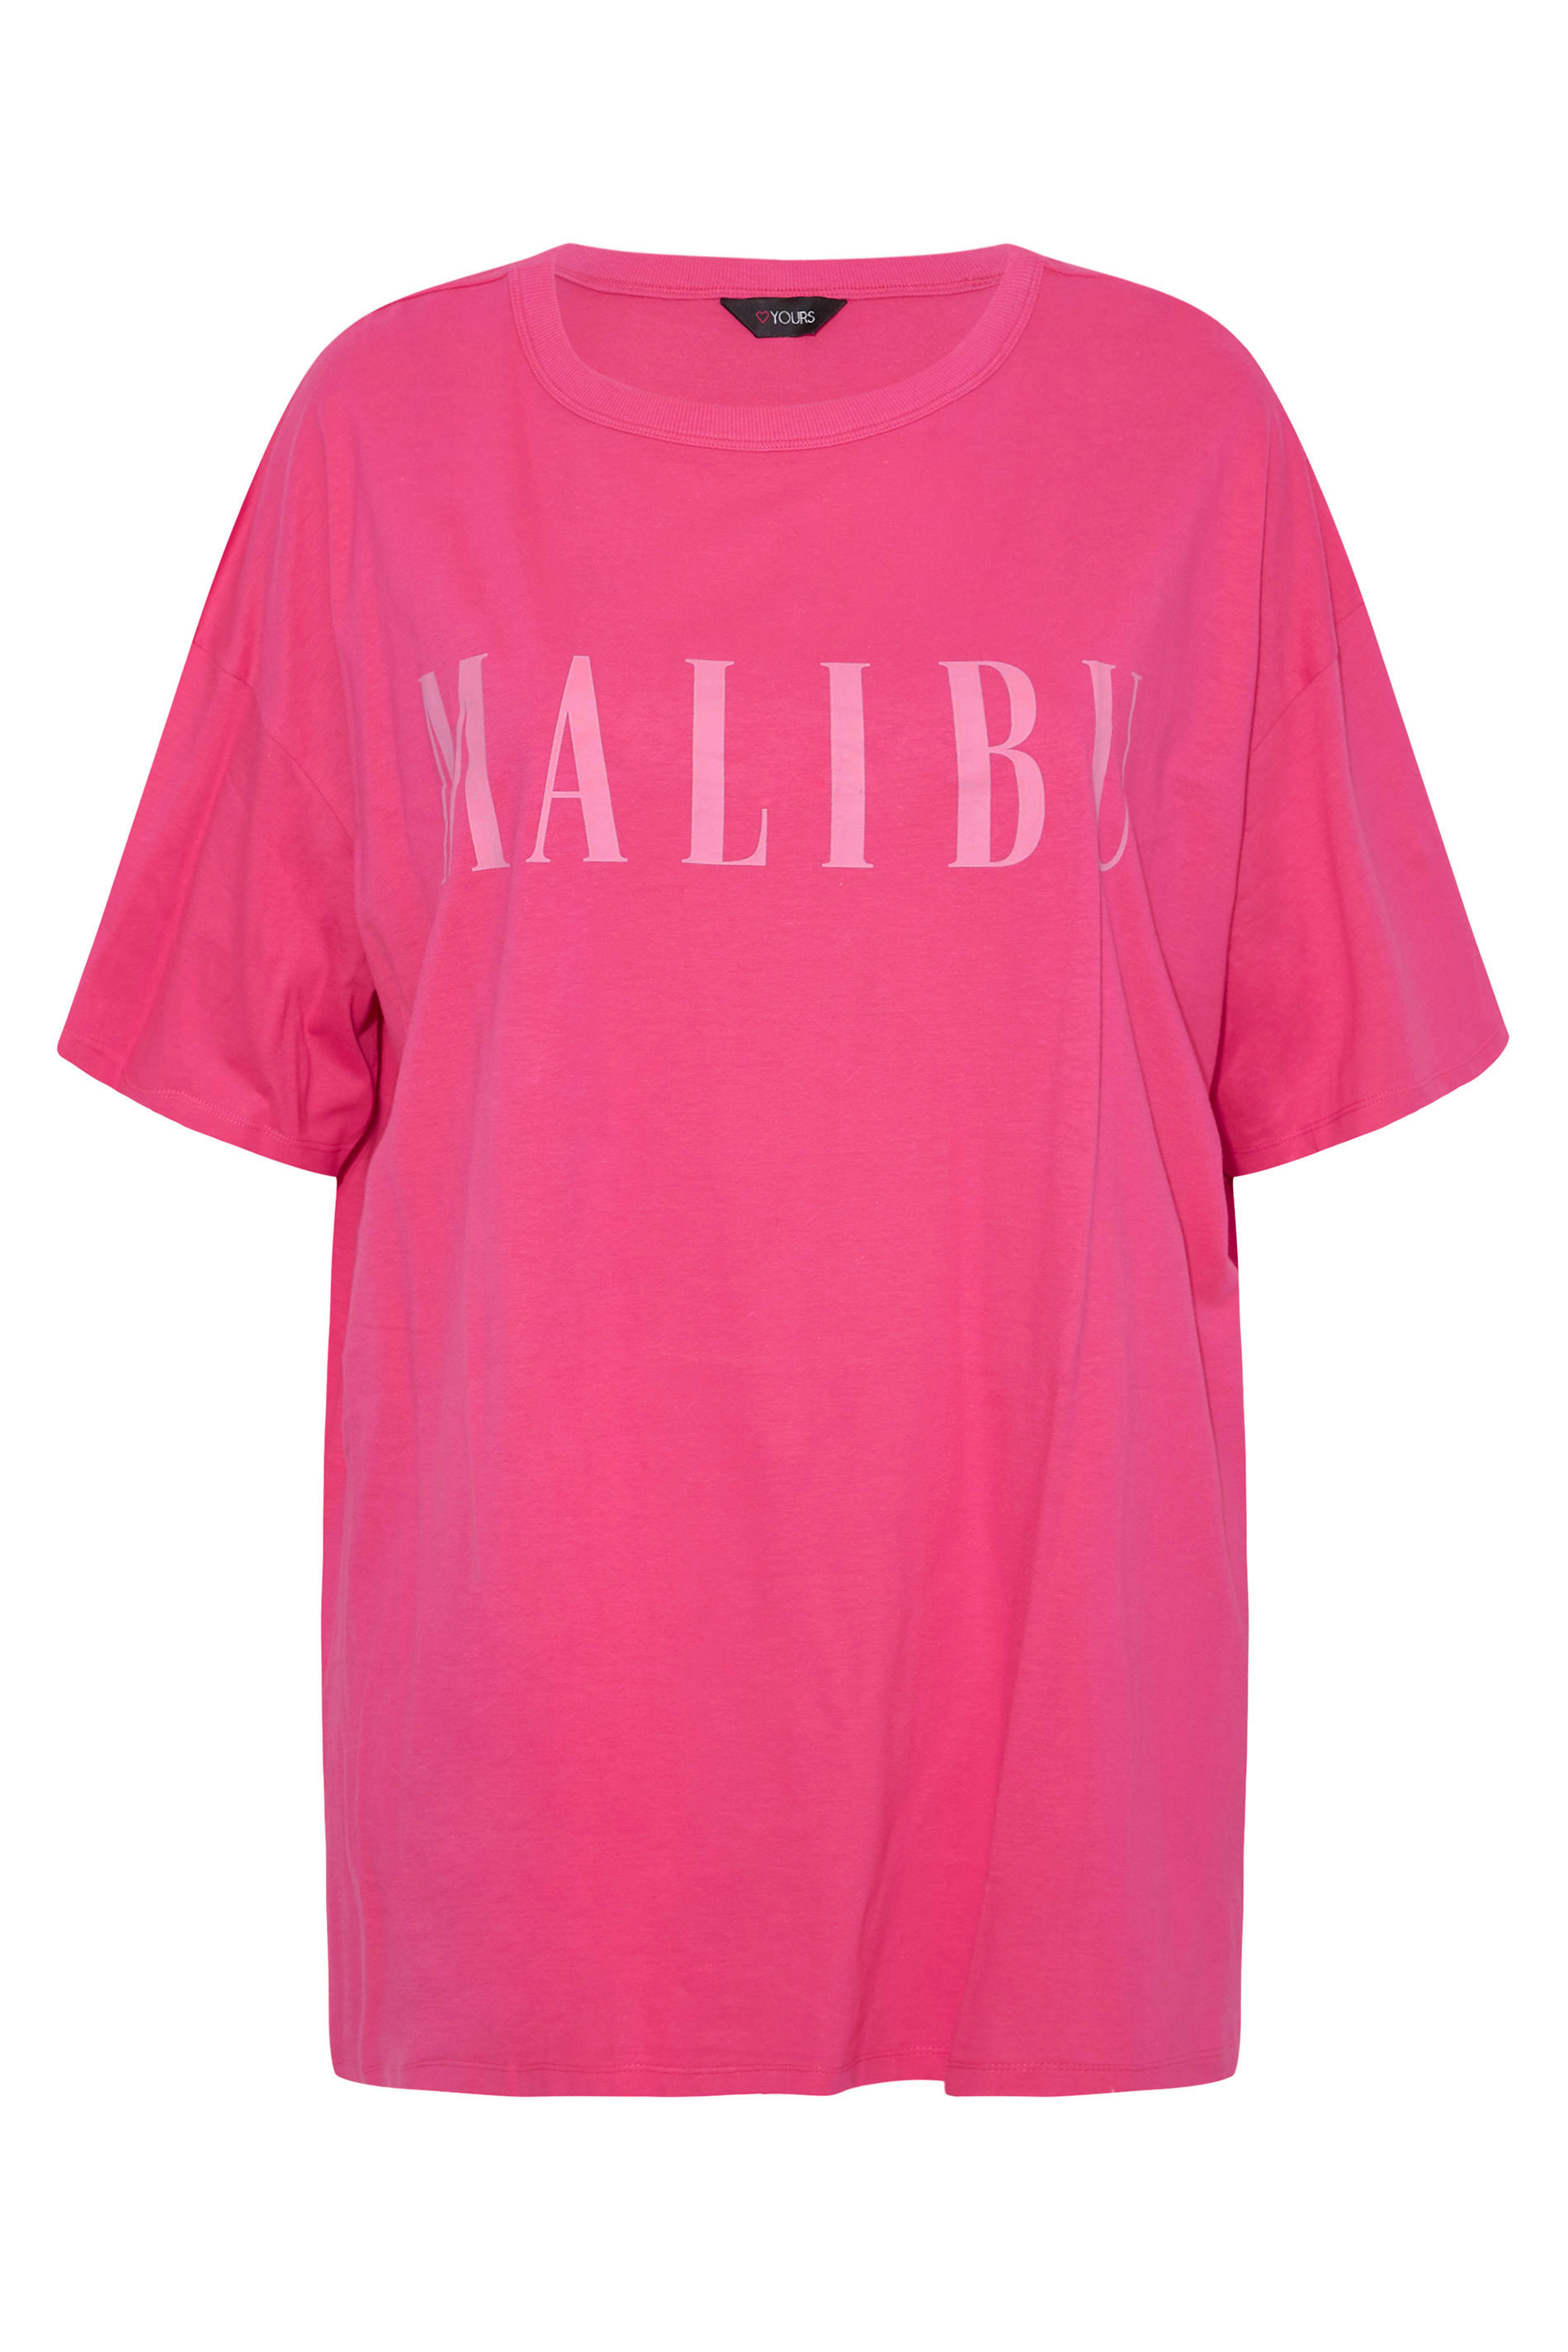 Grande taille  Tops Grande taille  Tops à Slogans | Tunique Rose Flashy 'Malibu' - XF58014